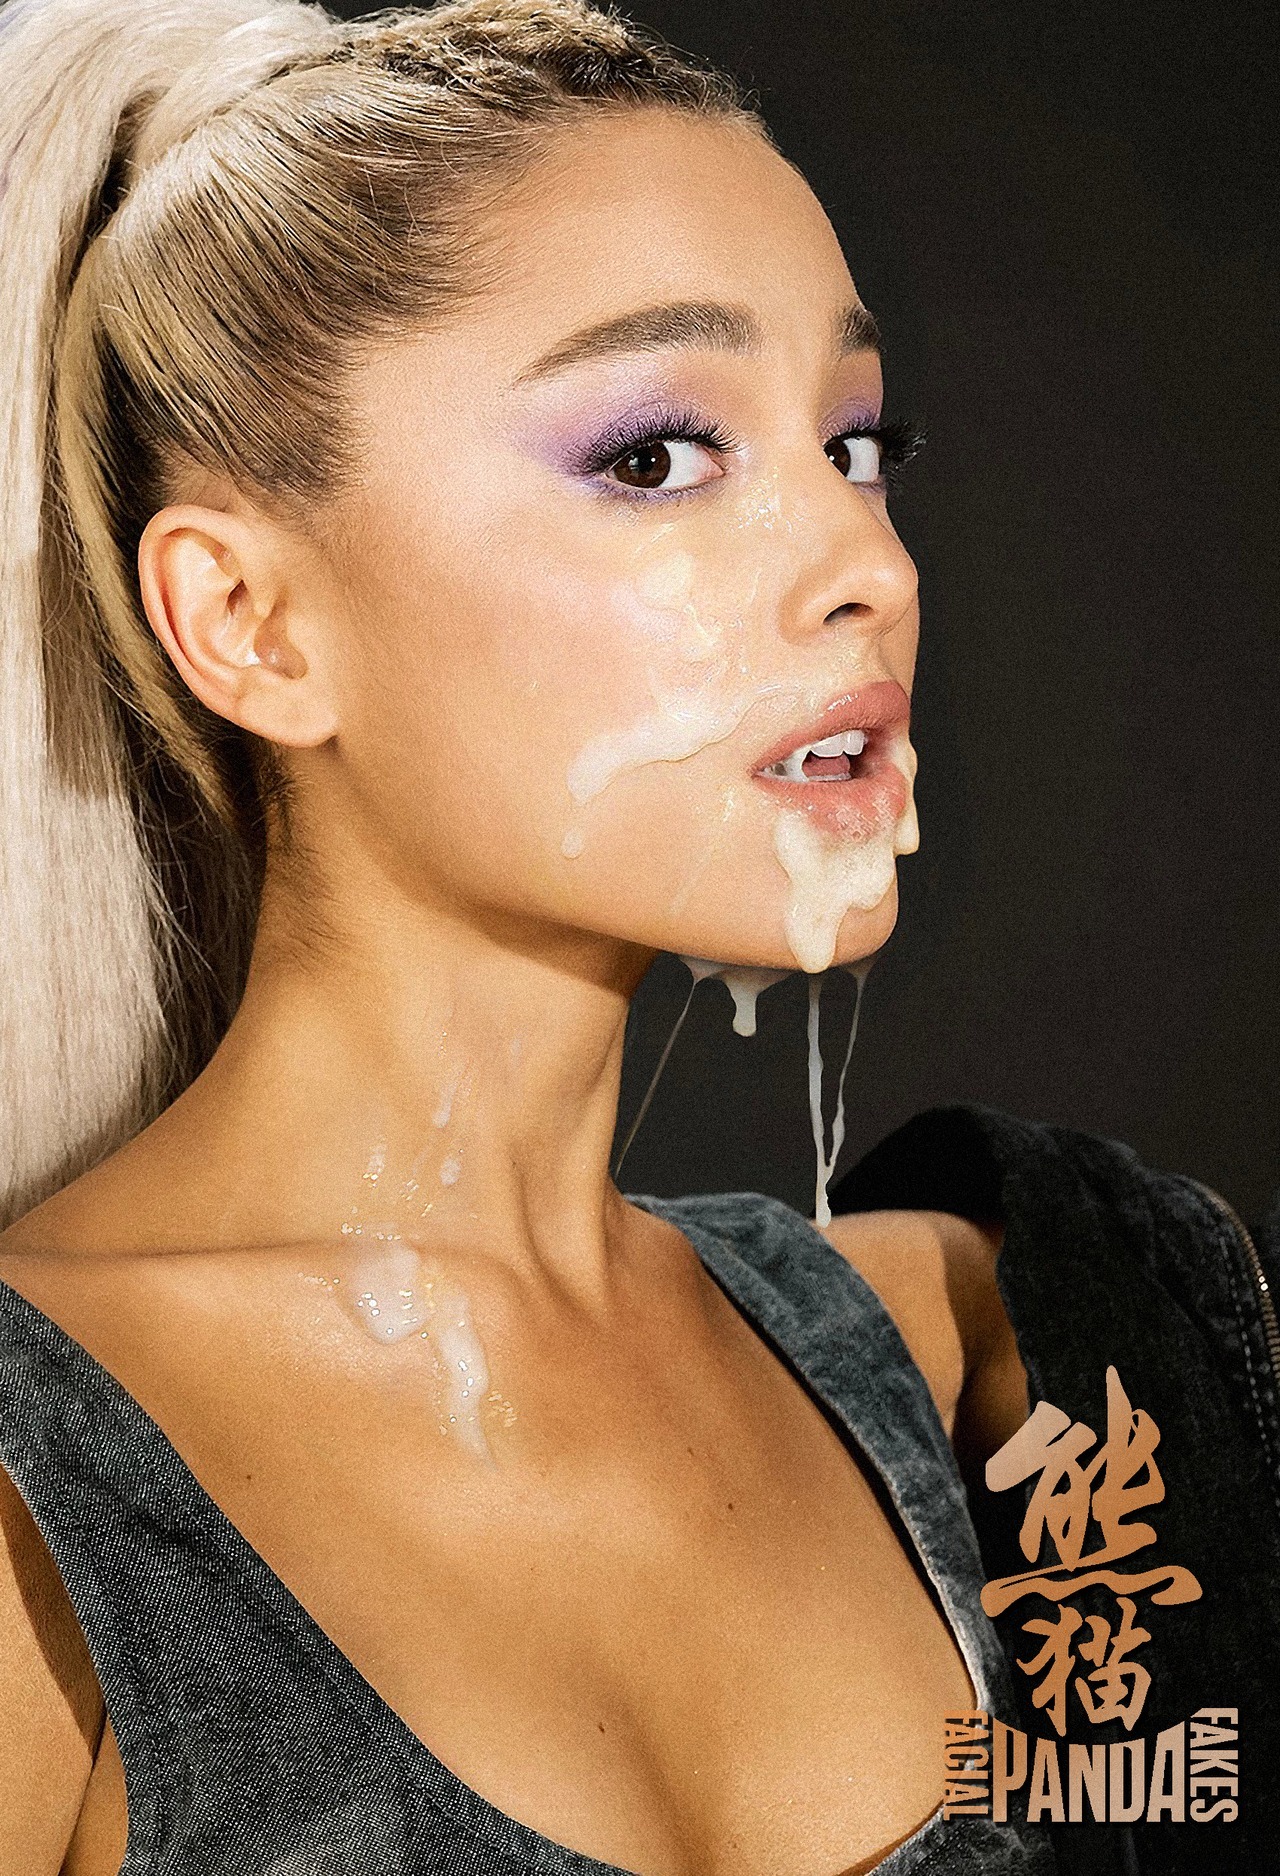 Panda Facial Fakes - Ariana Grande Got Some Special Make CLOUDX GIRL PICS.